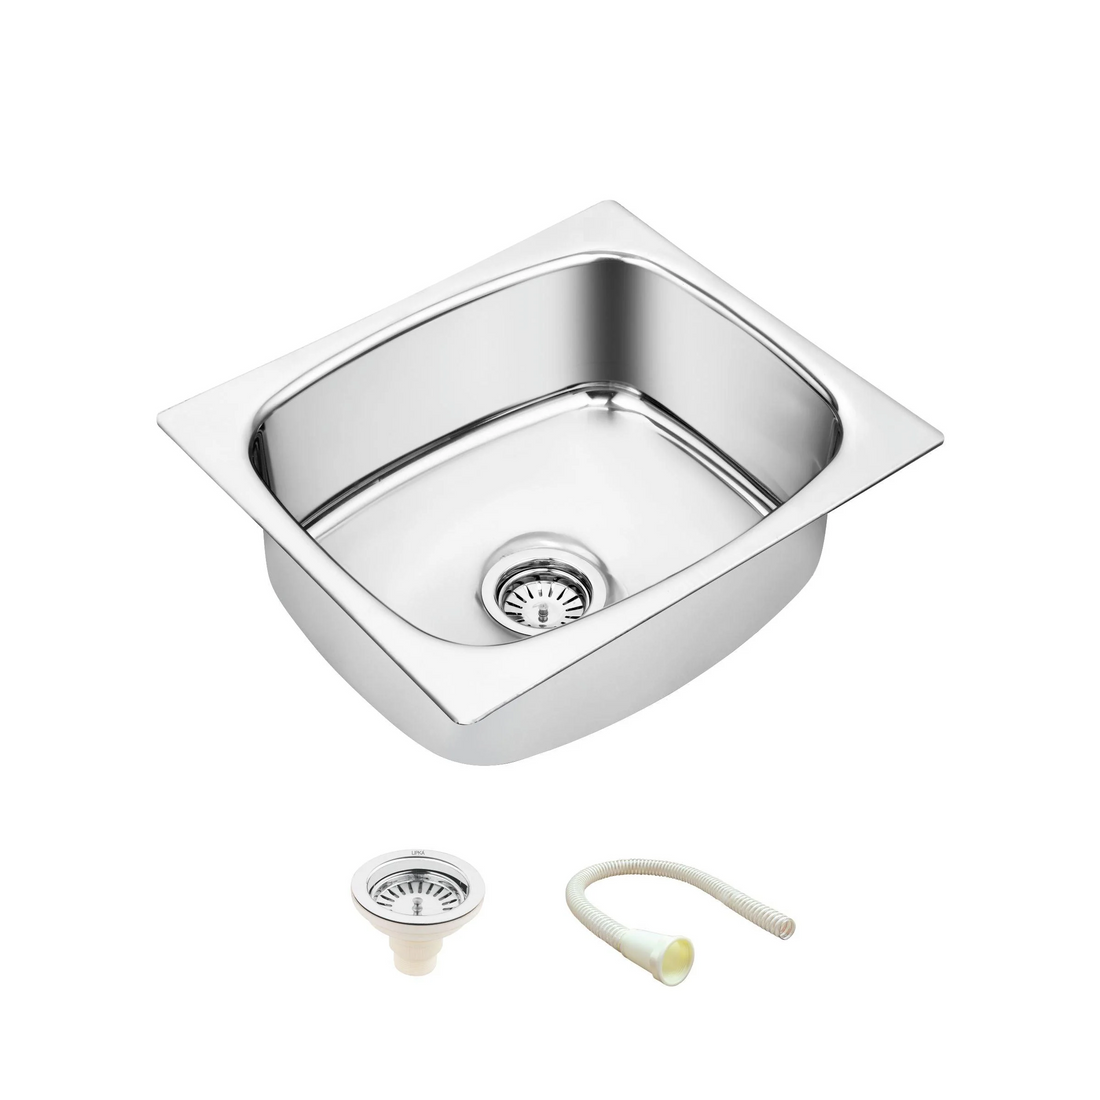 Round Single Bowl Kitchen Sink (21 x 18 x 8 Inches)